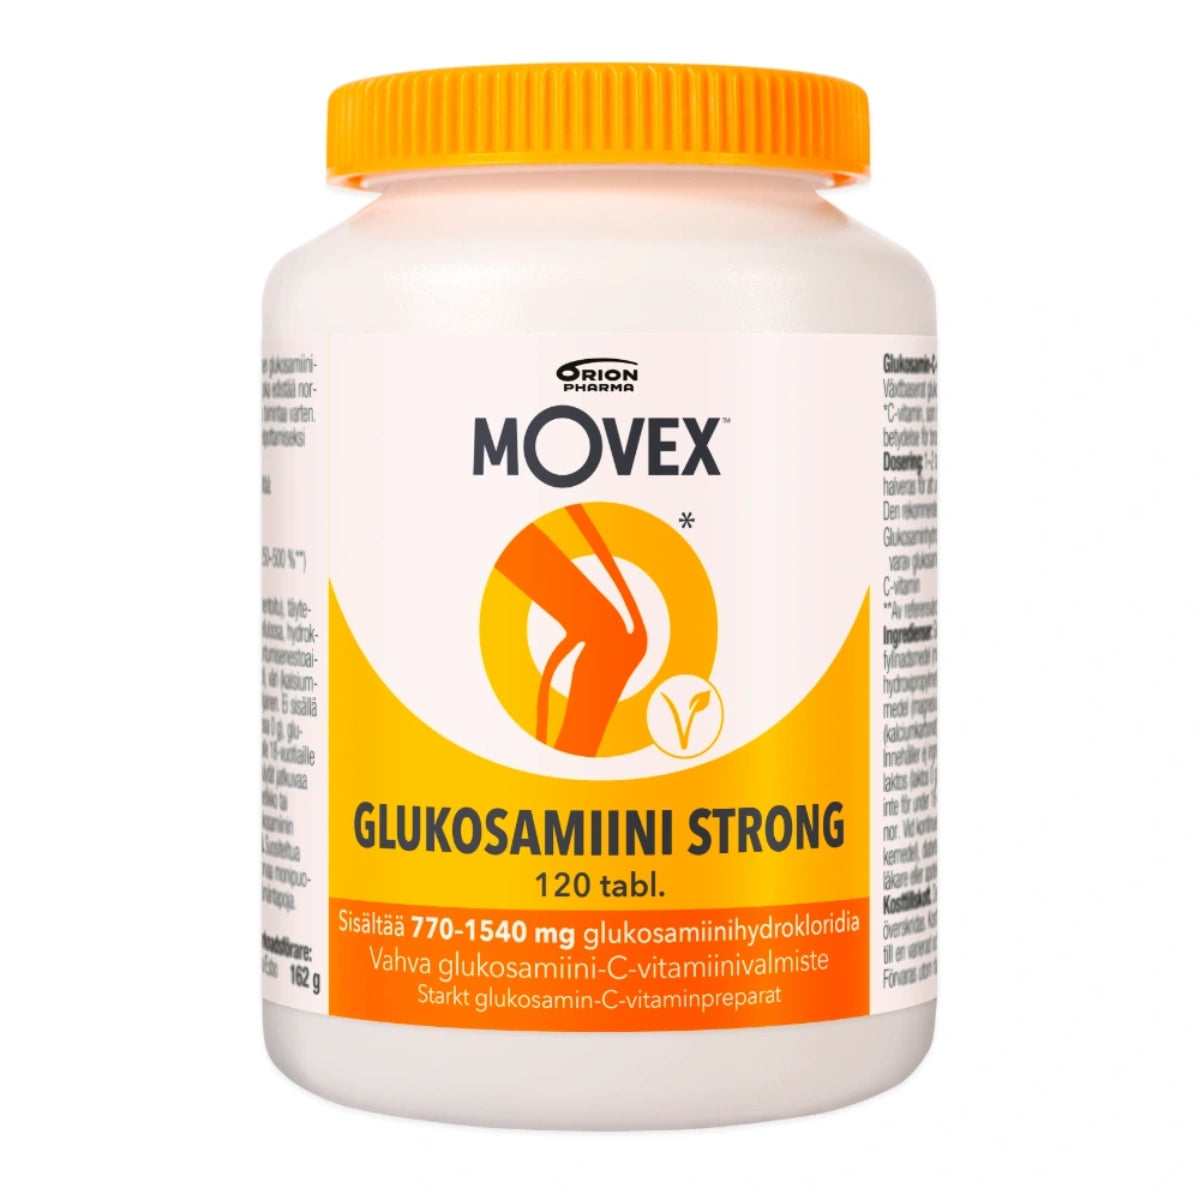 MOVEX Glukosamiini Strong tabletti 120 kpl sisältää kasvipohjaista glukosamiinia.